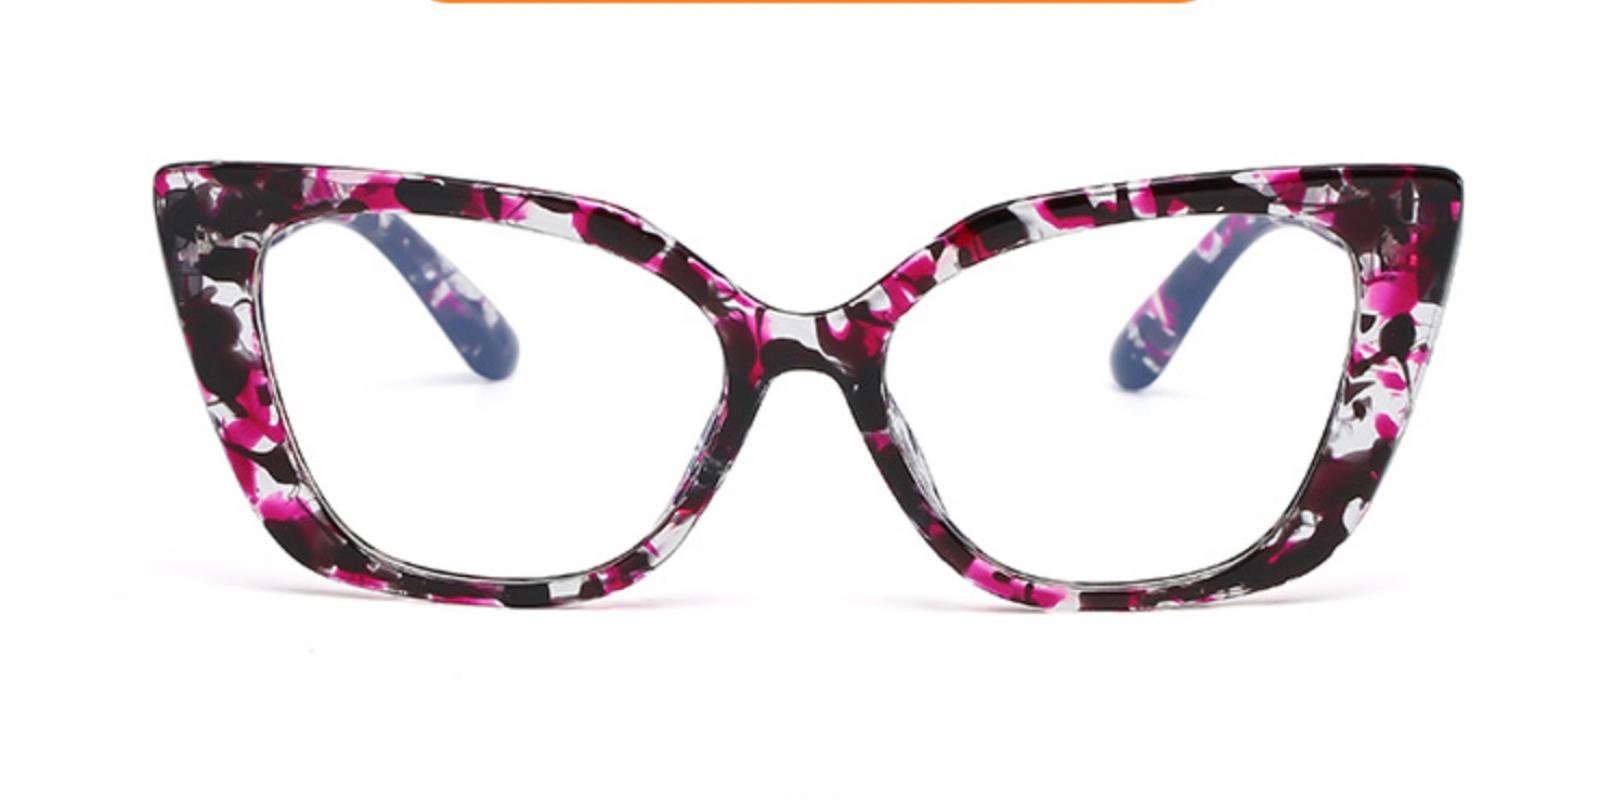 Menfold Pattern Plastic Eyeglasses , UniversalBridgeFit Frames from ABBE Glasses